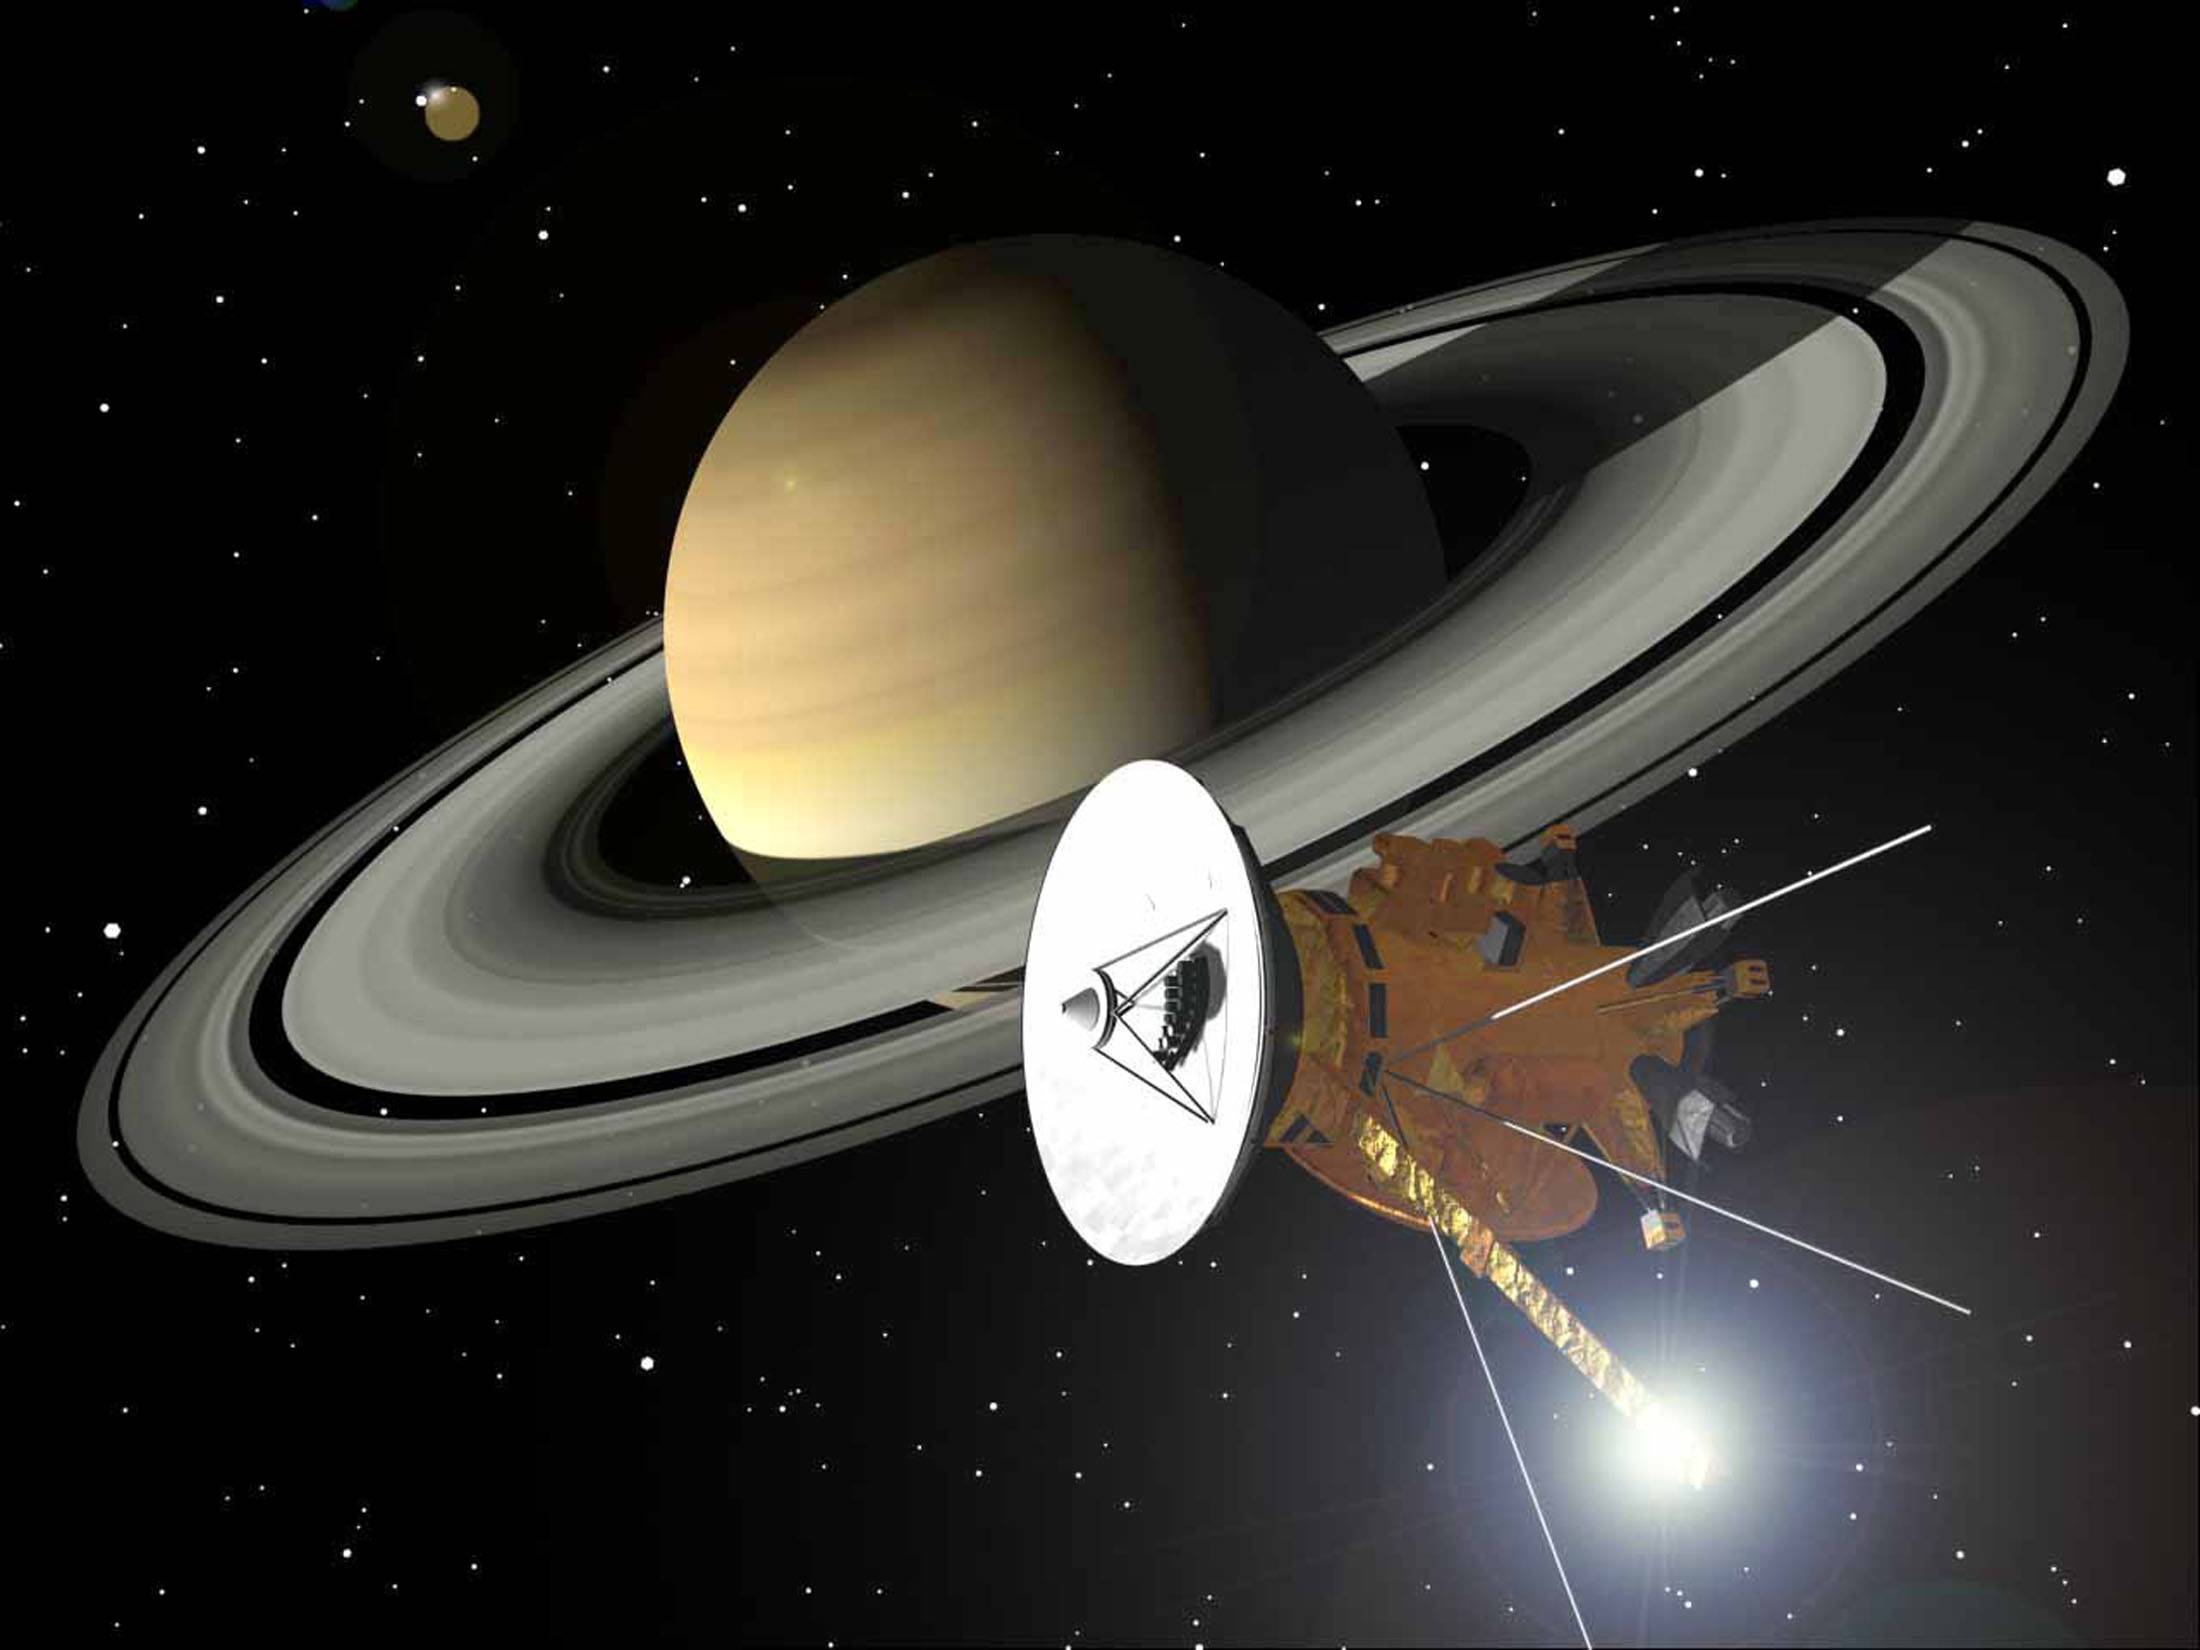 Прощай, «Кассини»: итоги 20-летней миссии к Сатурну 19